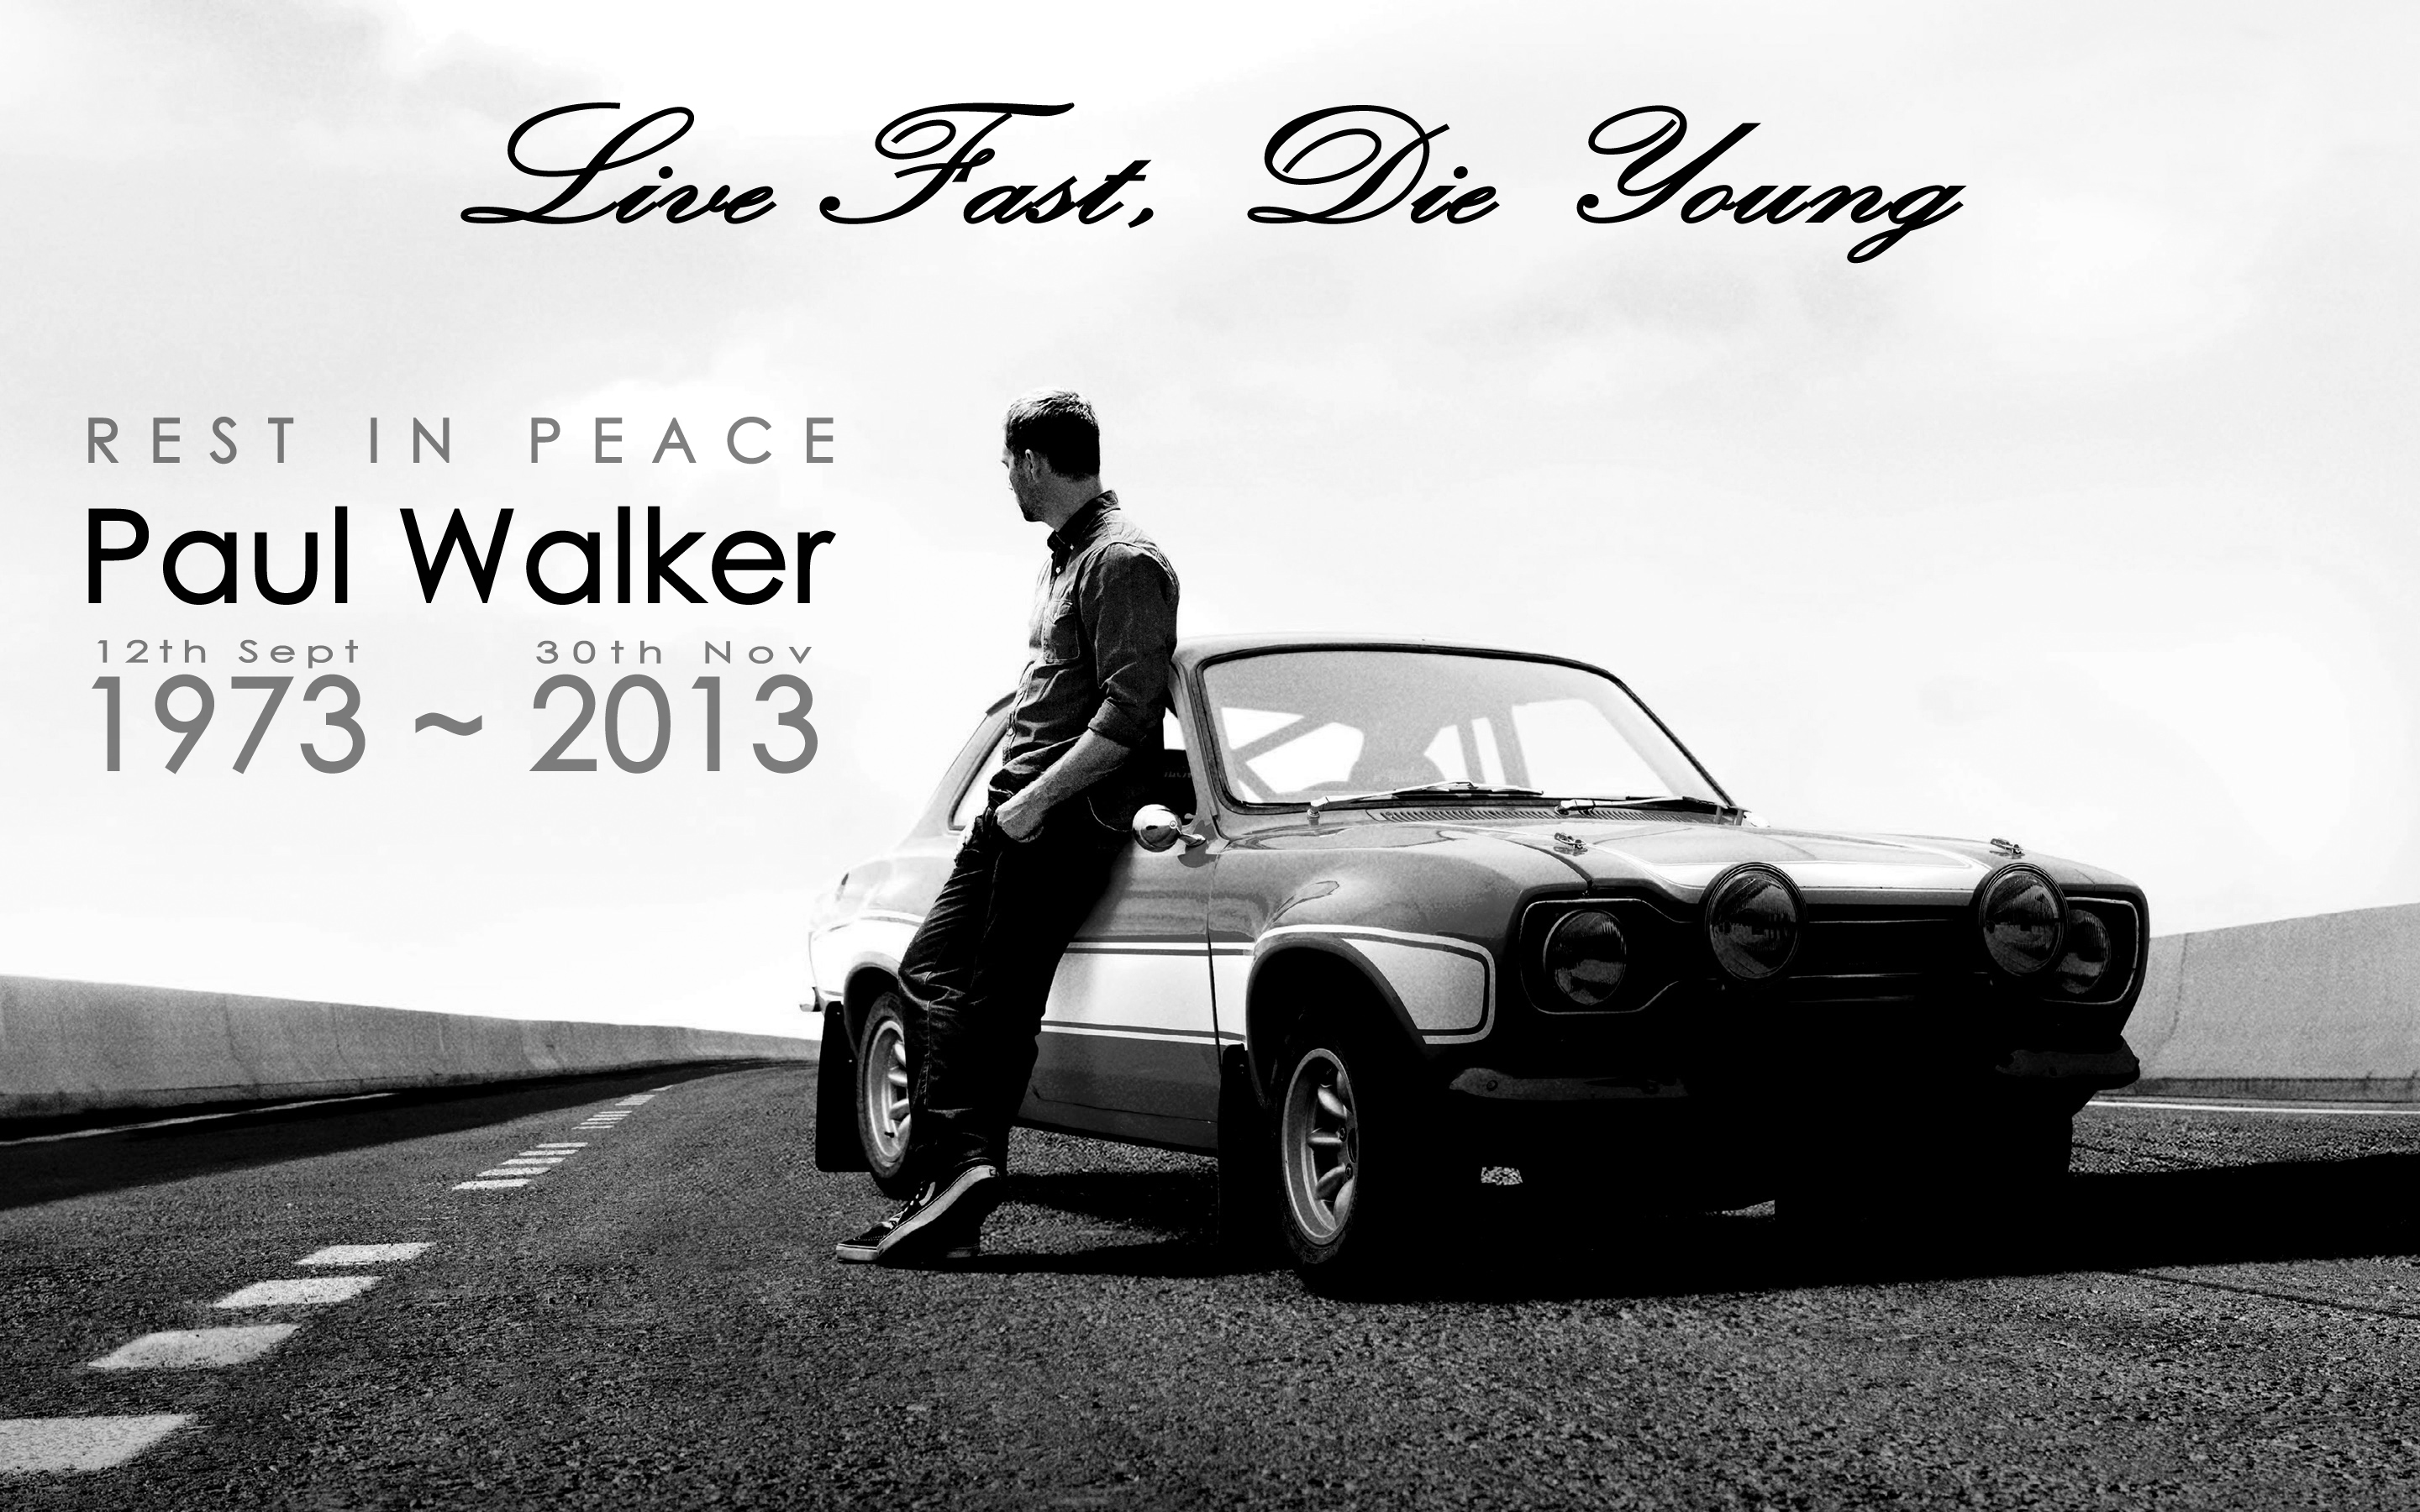 Paul Walker - Fast & Furious 7 Wallpaper (38546782) - Fanpop